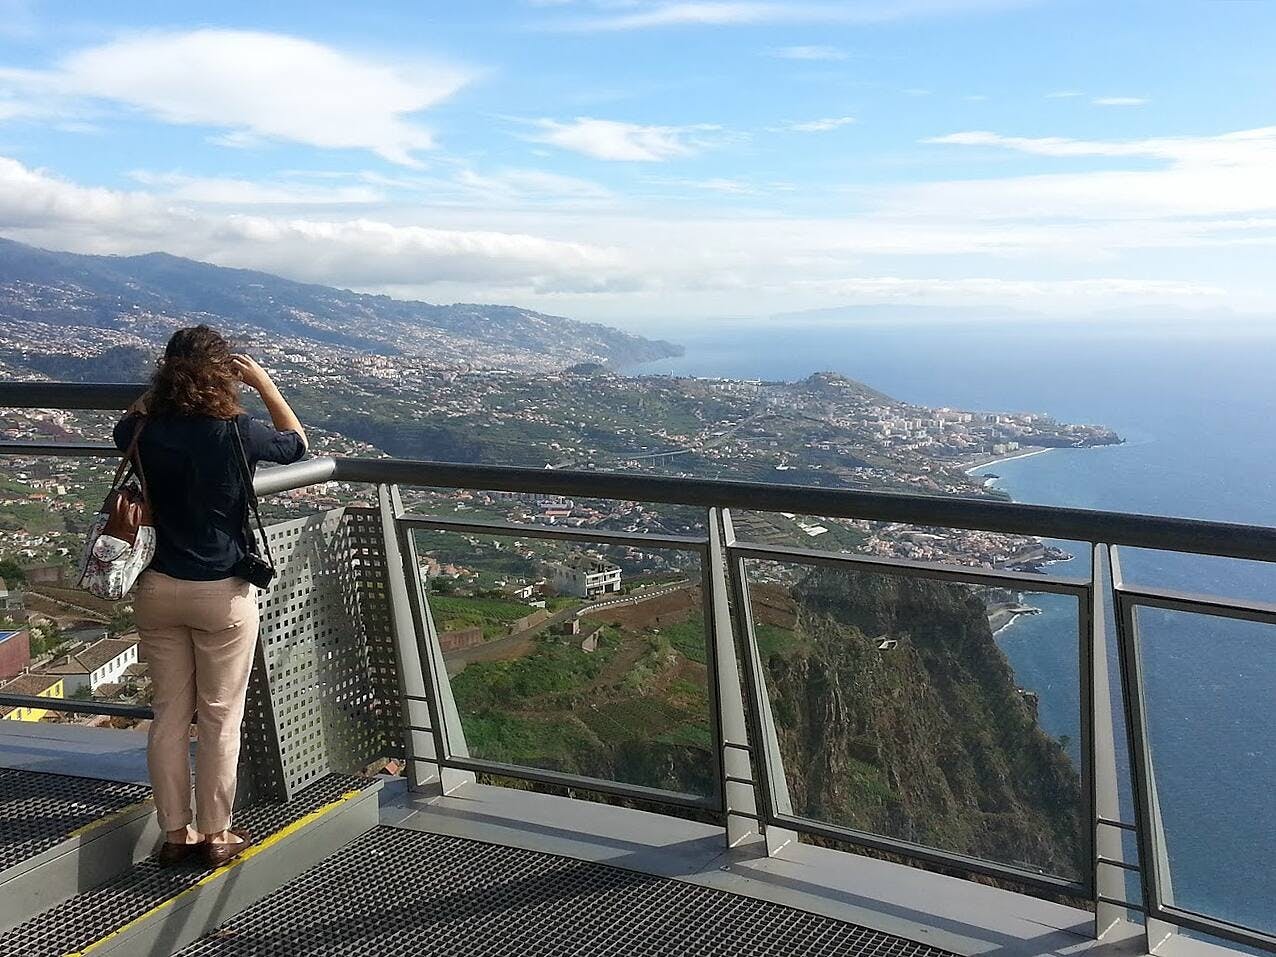 Madeira Iconic Insiders Tour with Cabo Girão Cliffs